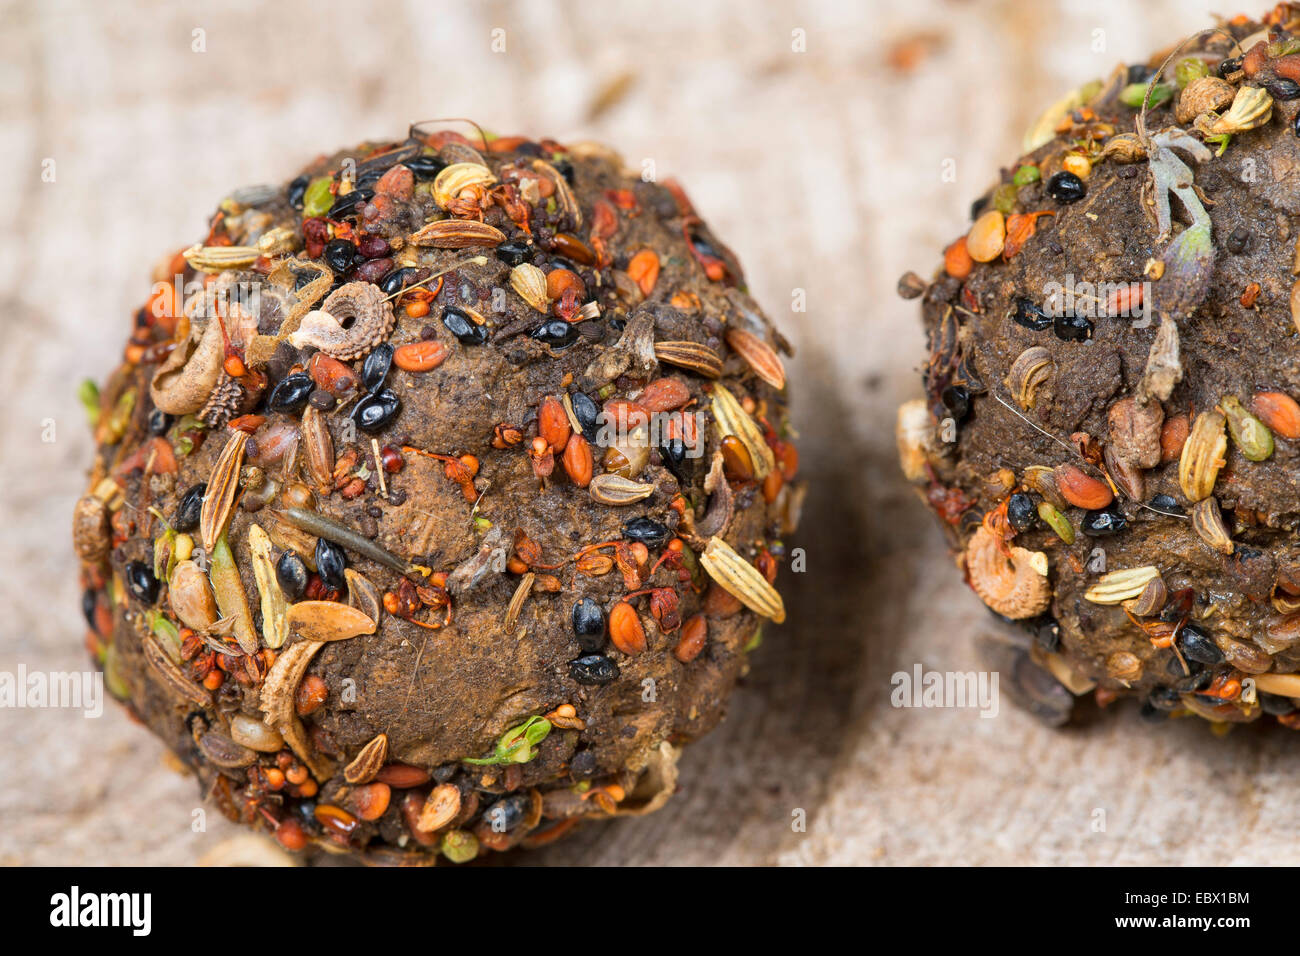 Des bombes de semences avec différentes graines et fruits et des sols, de l'Allemagne Banque D'Images